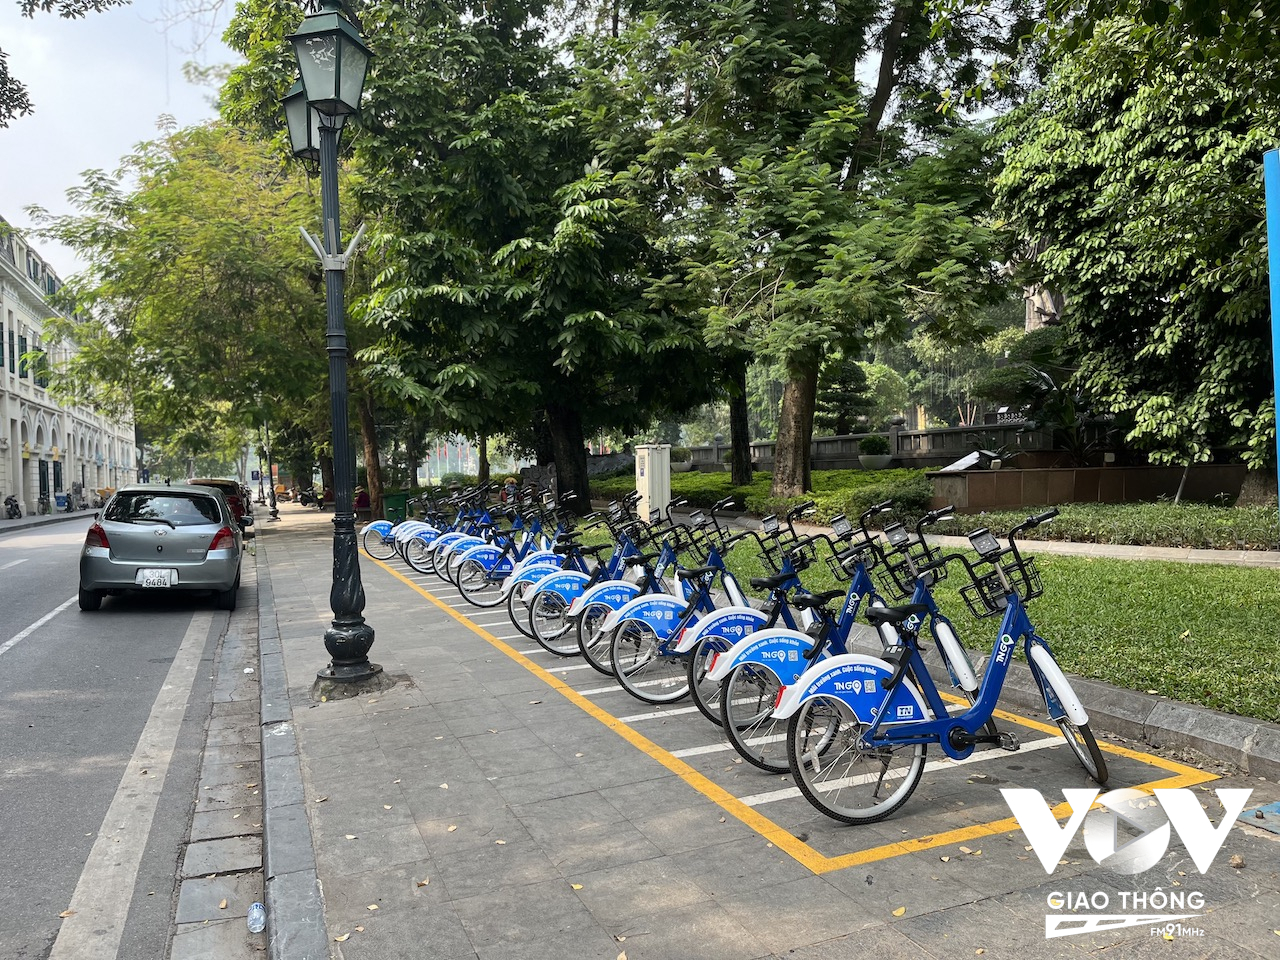 Thời gian qua, thành phố Hà Nội đã triển khai dịch vụ cho thuê xe đạp ở nhiều tuyến phố. Với những người có nhu cầu di chuyển quãng đường ngắn, hoặc chỉ là đi ngắm cảnh, đây là một lựa chọn khá hợp lý...